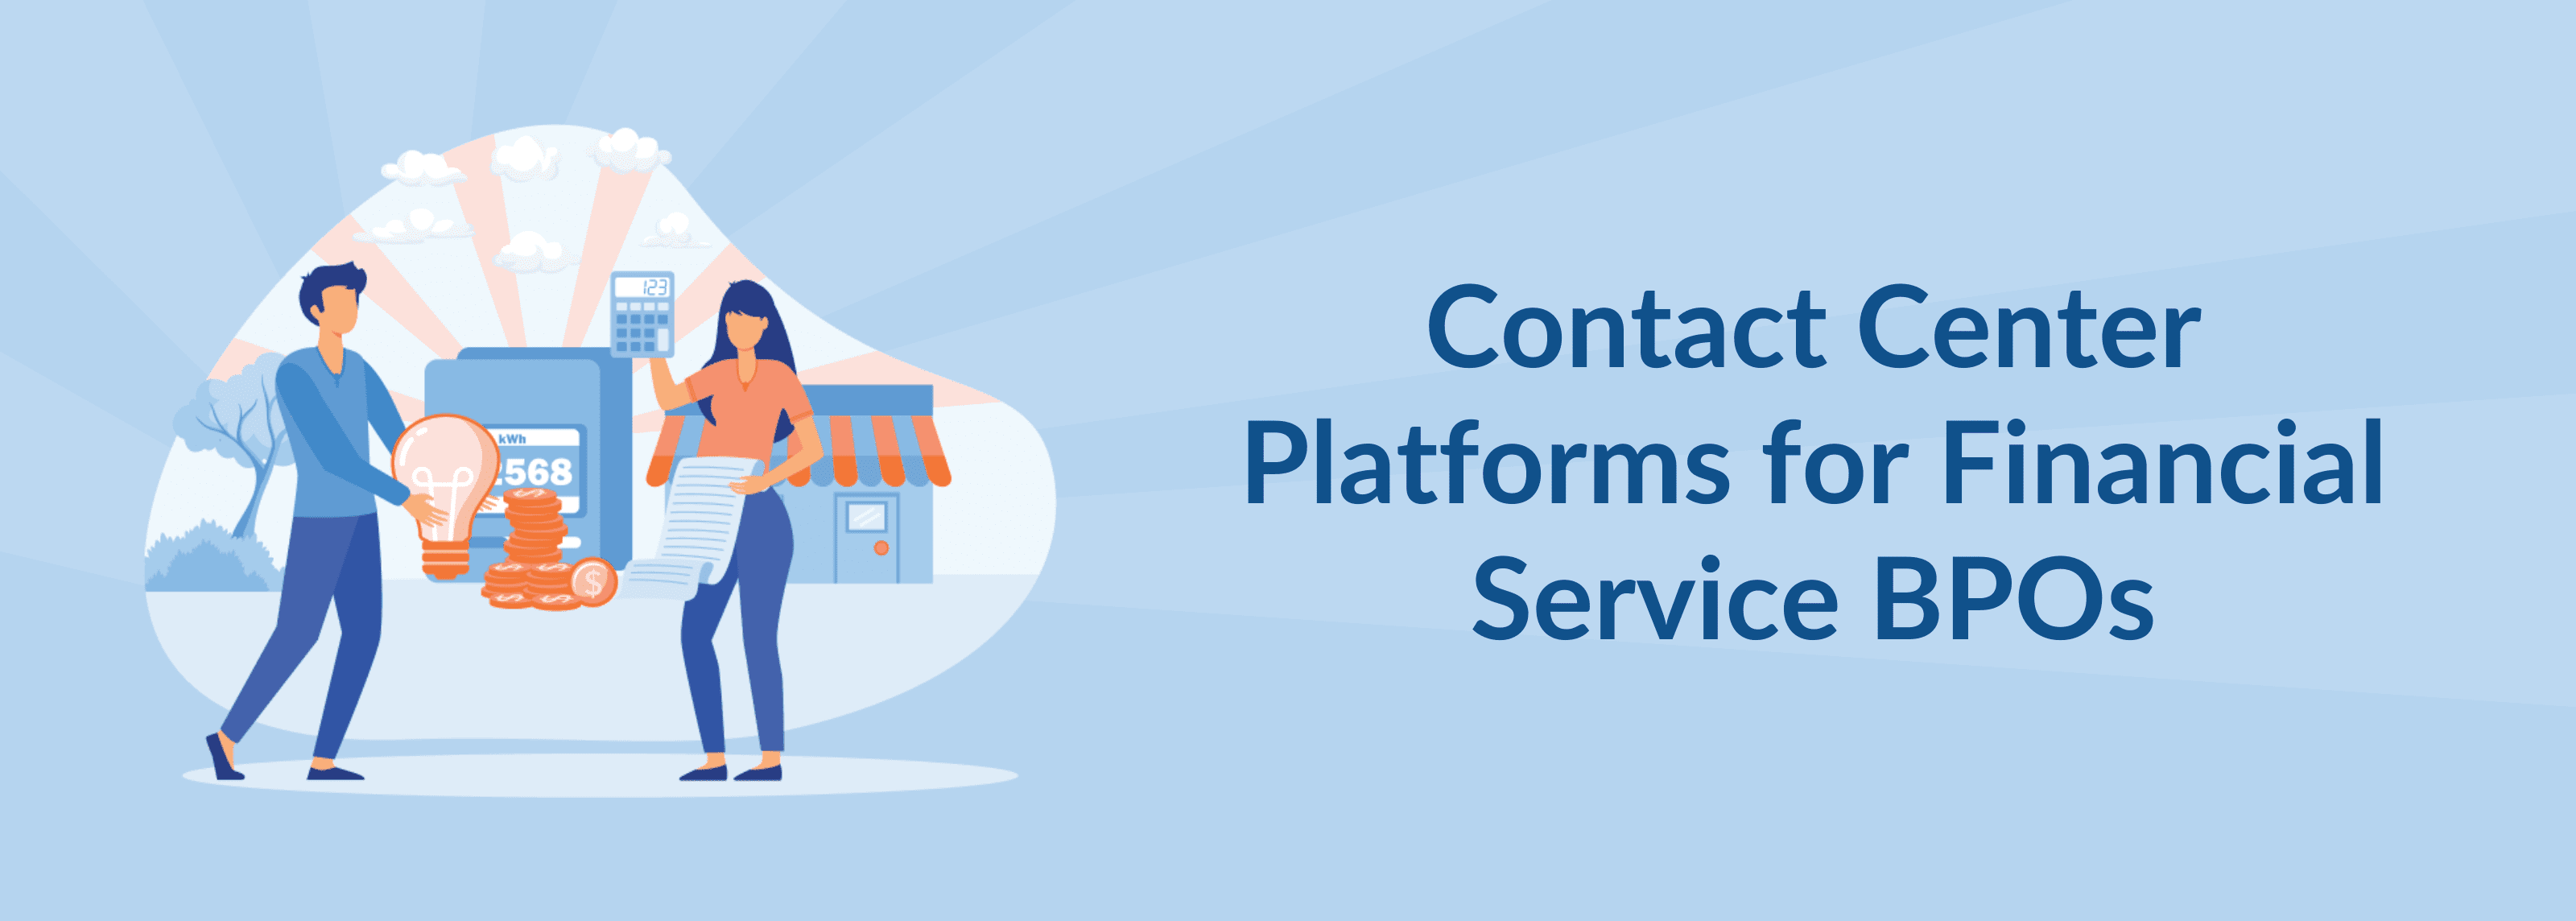 Contact Center Platforms for Financial Service BPOs